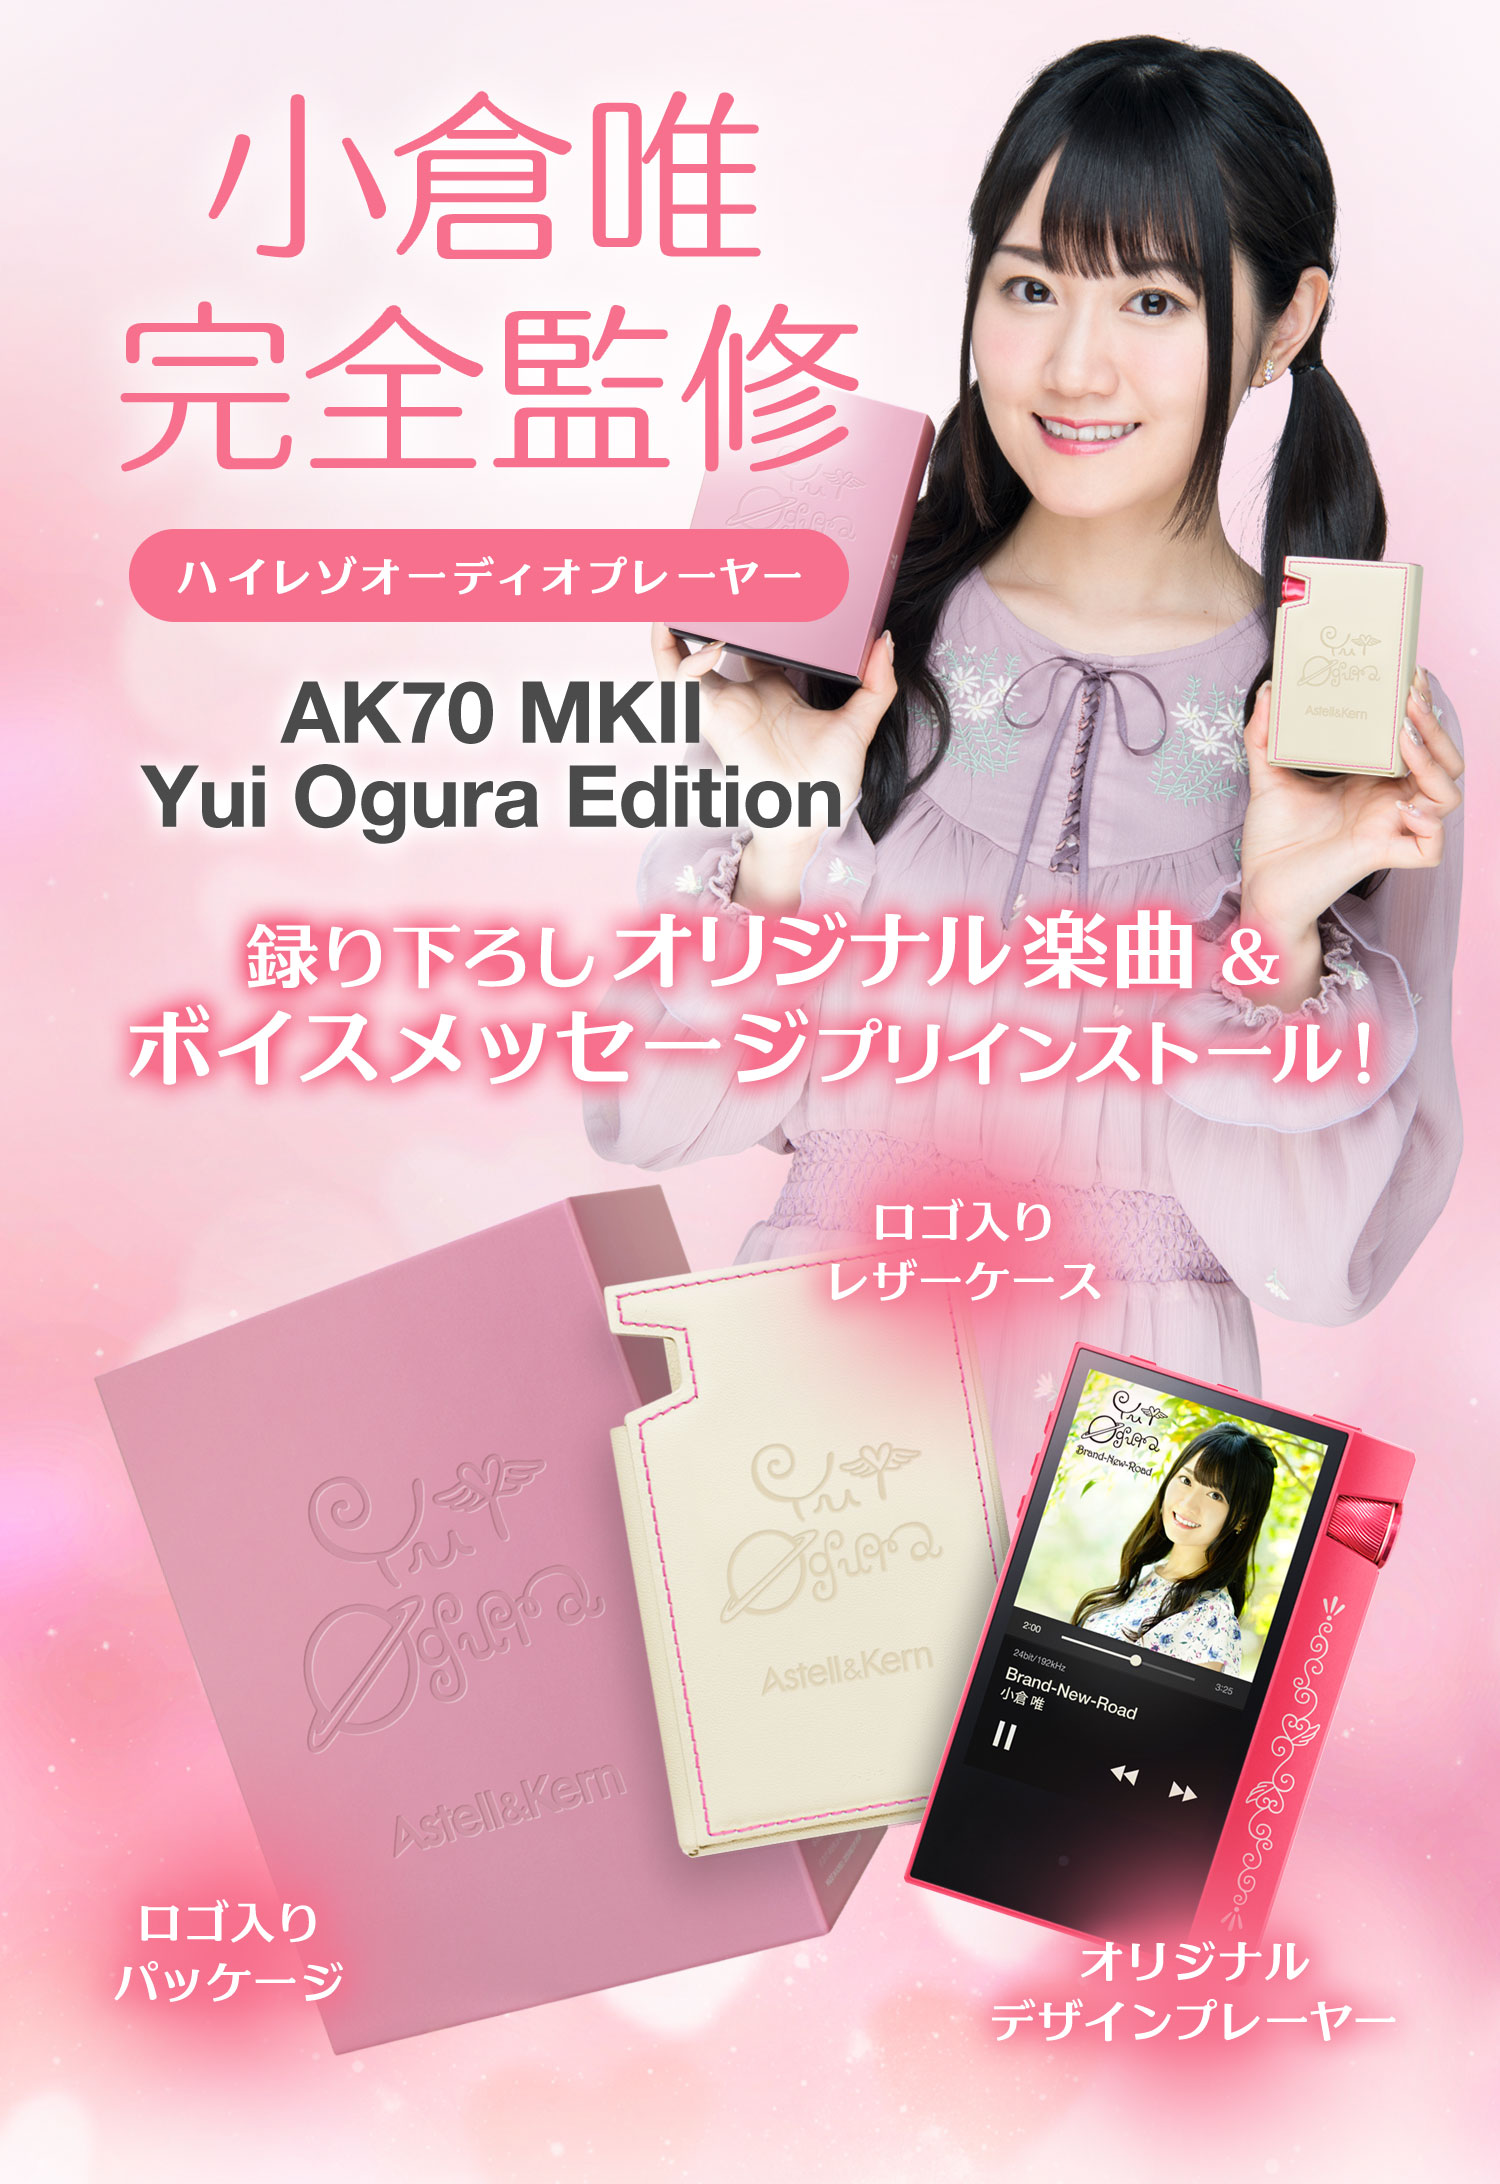 送料無料価格 AK70 Astell&Kern MKII Edition Ogura Yui ポータブルプレーヤー